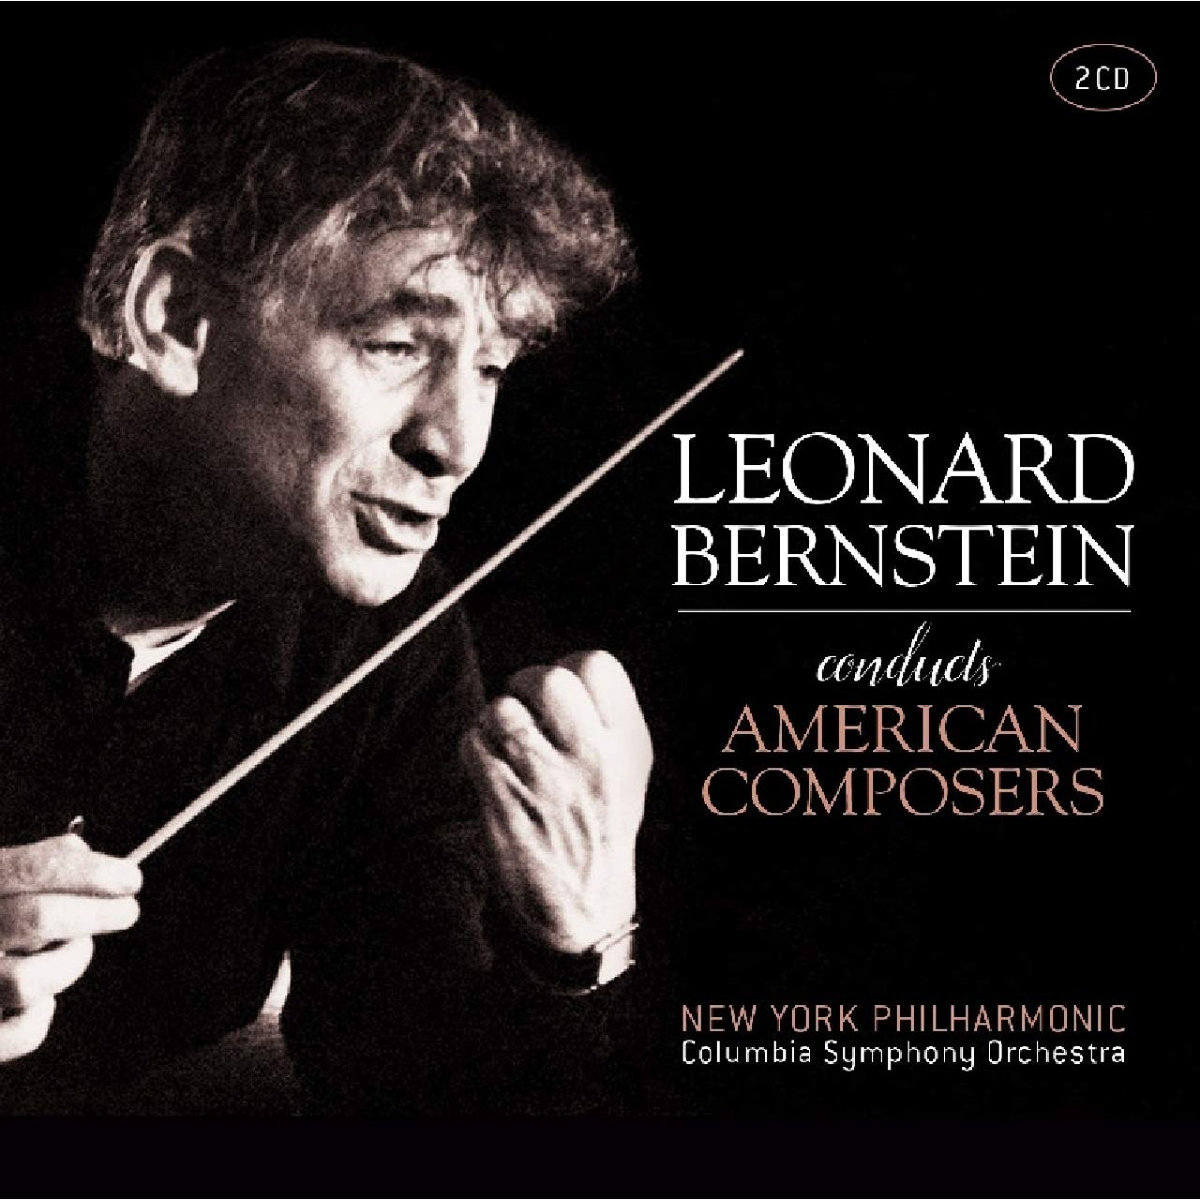 Conducts　Muzyka　Composers　Leonard　(Remastered)　Bernstein　American　Bernstein　Sklep